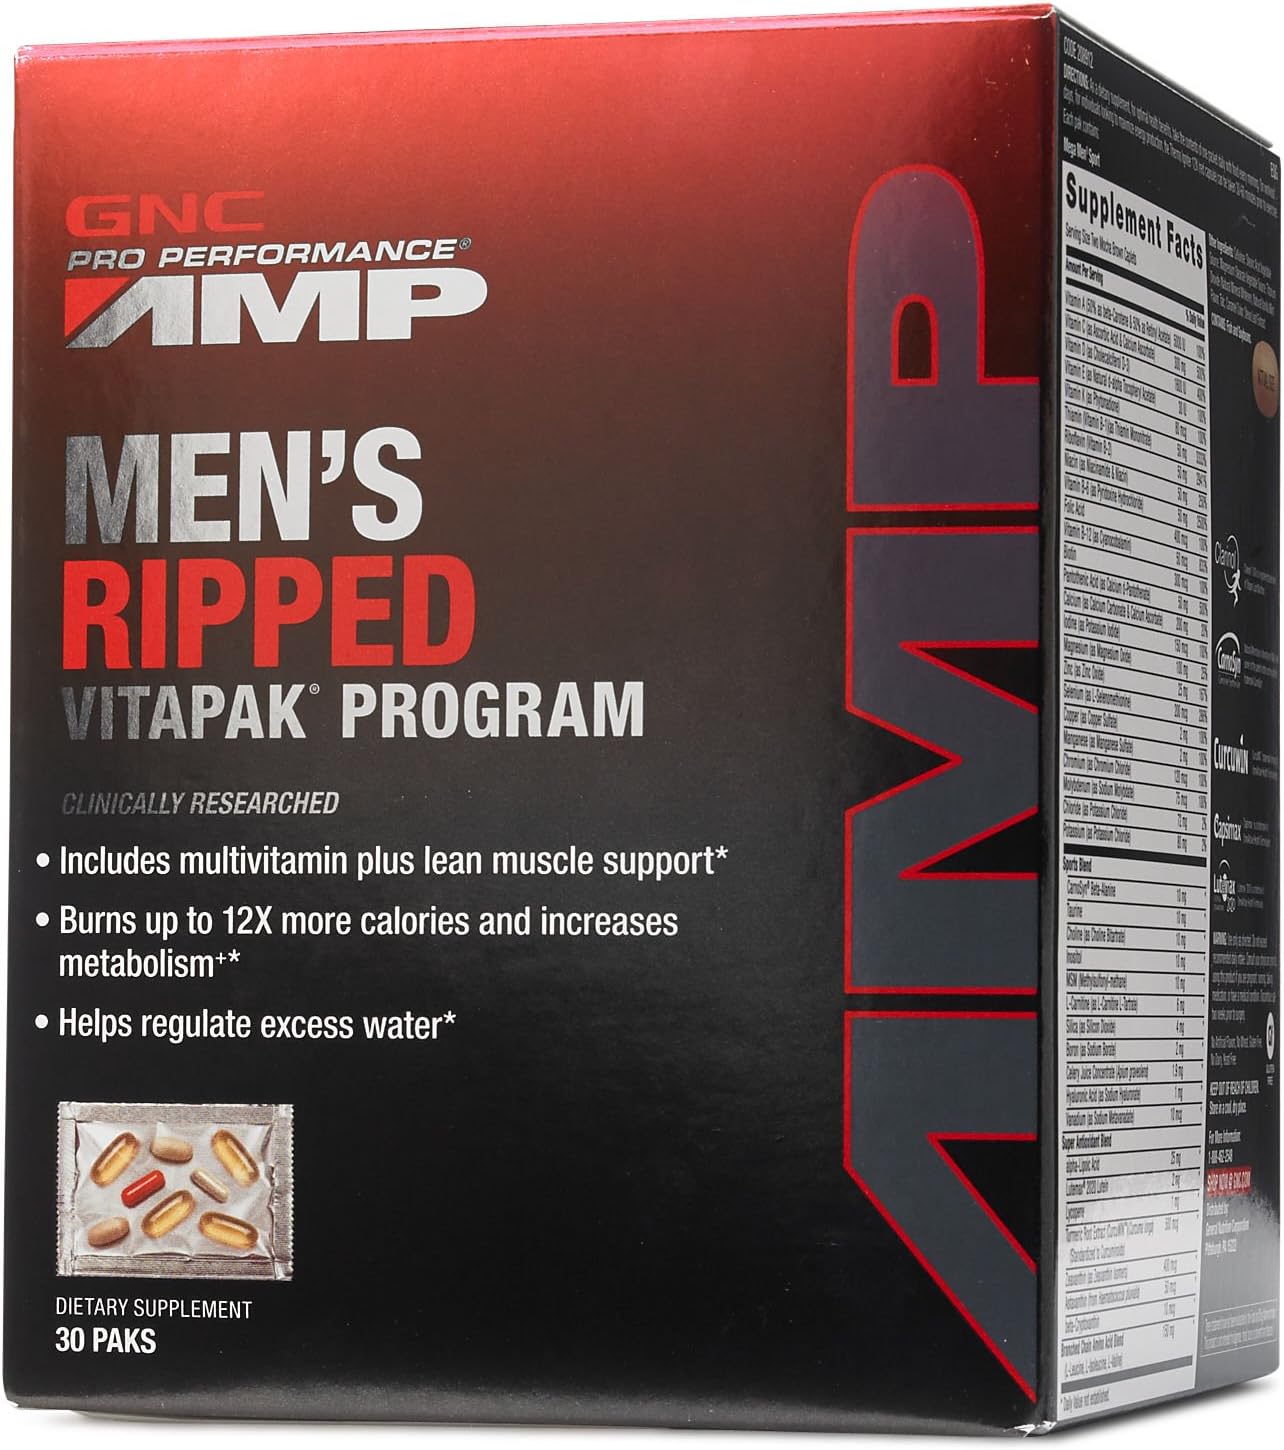 GNC Pro Performance AMP Mens Ripped Vitapak Program, 30 paks